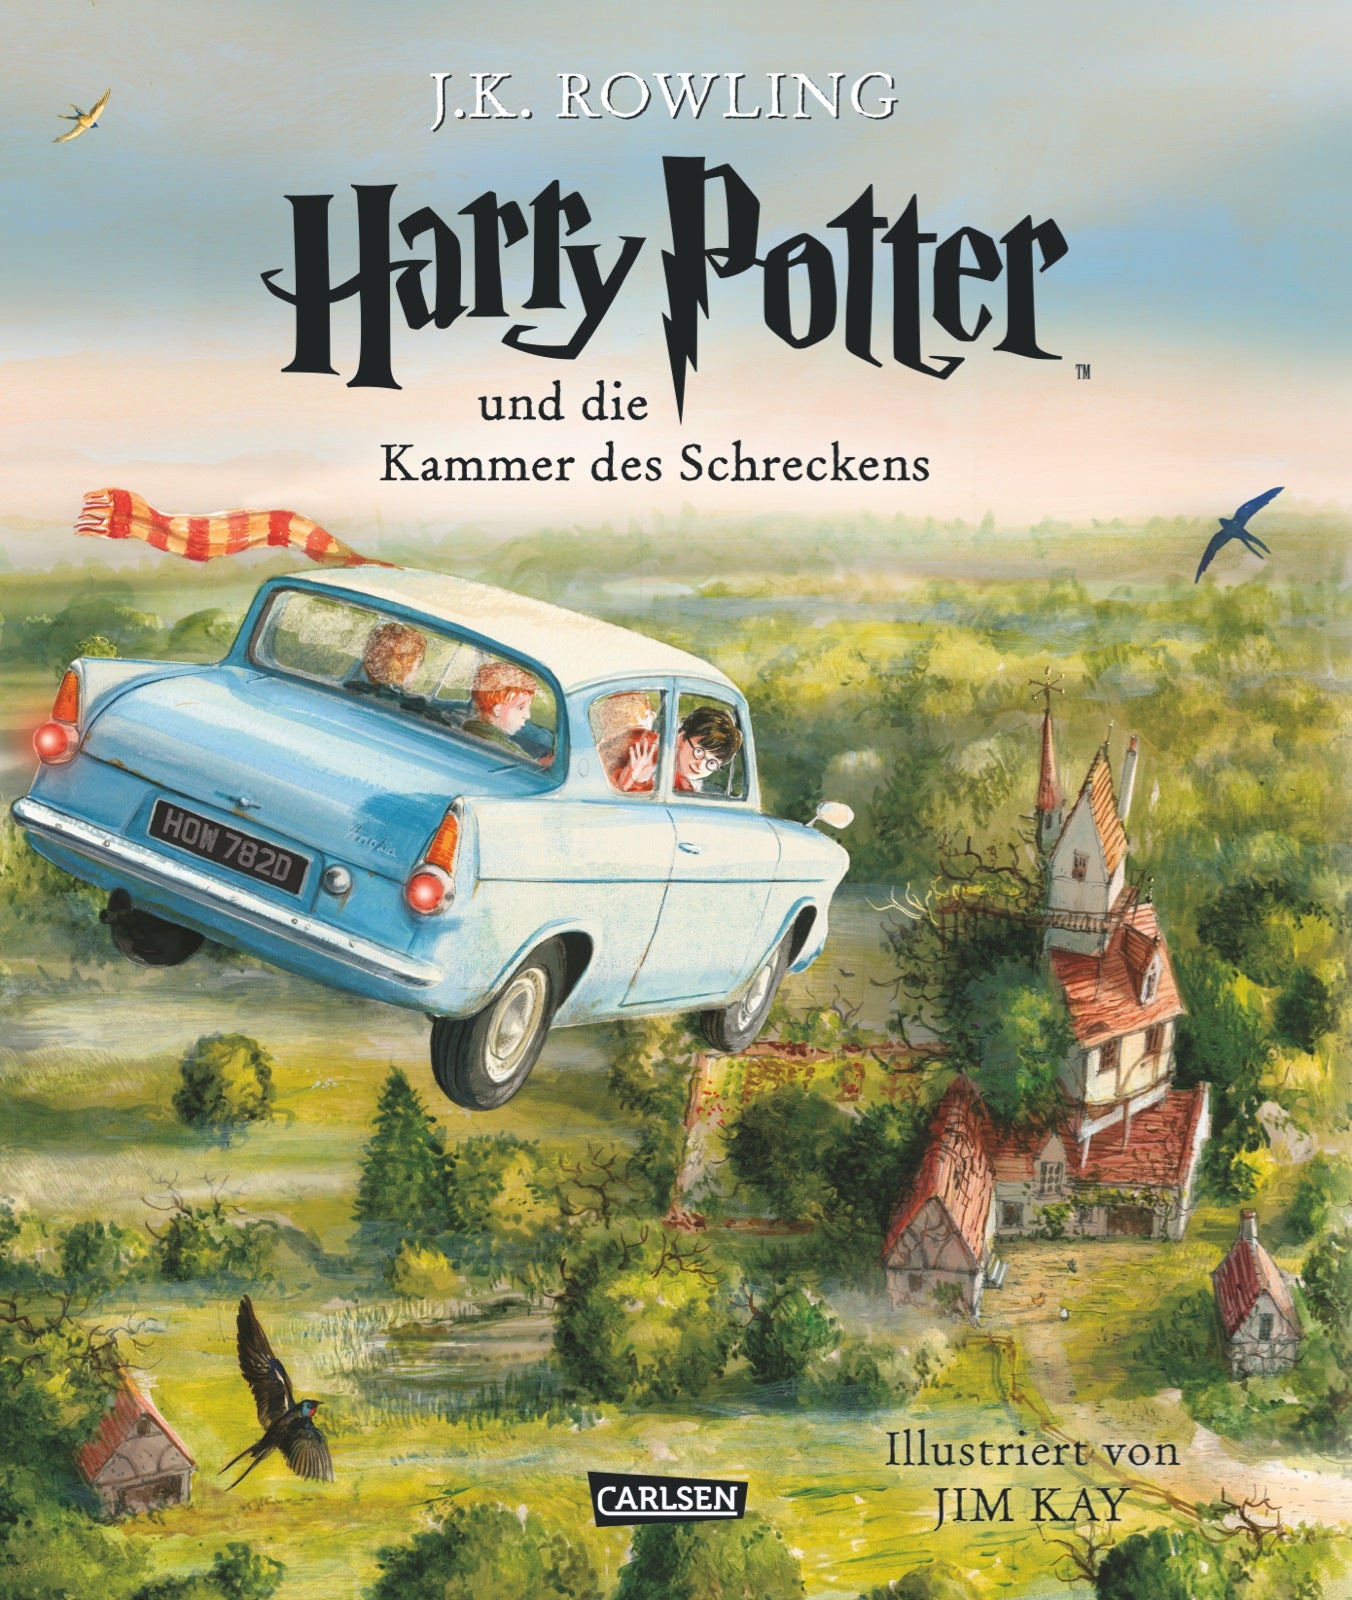 Harry Potter - Band 2 - Harry Potter und die Kammer des Schreckens (farbig illustrierte Schmuckausgabe) - Hardcover